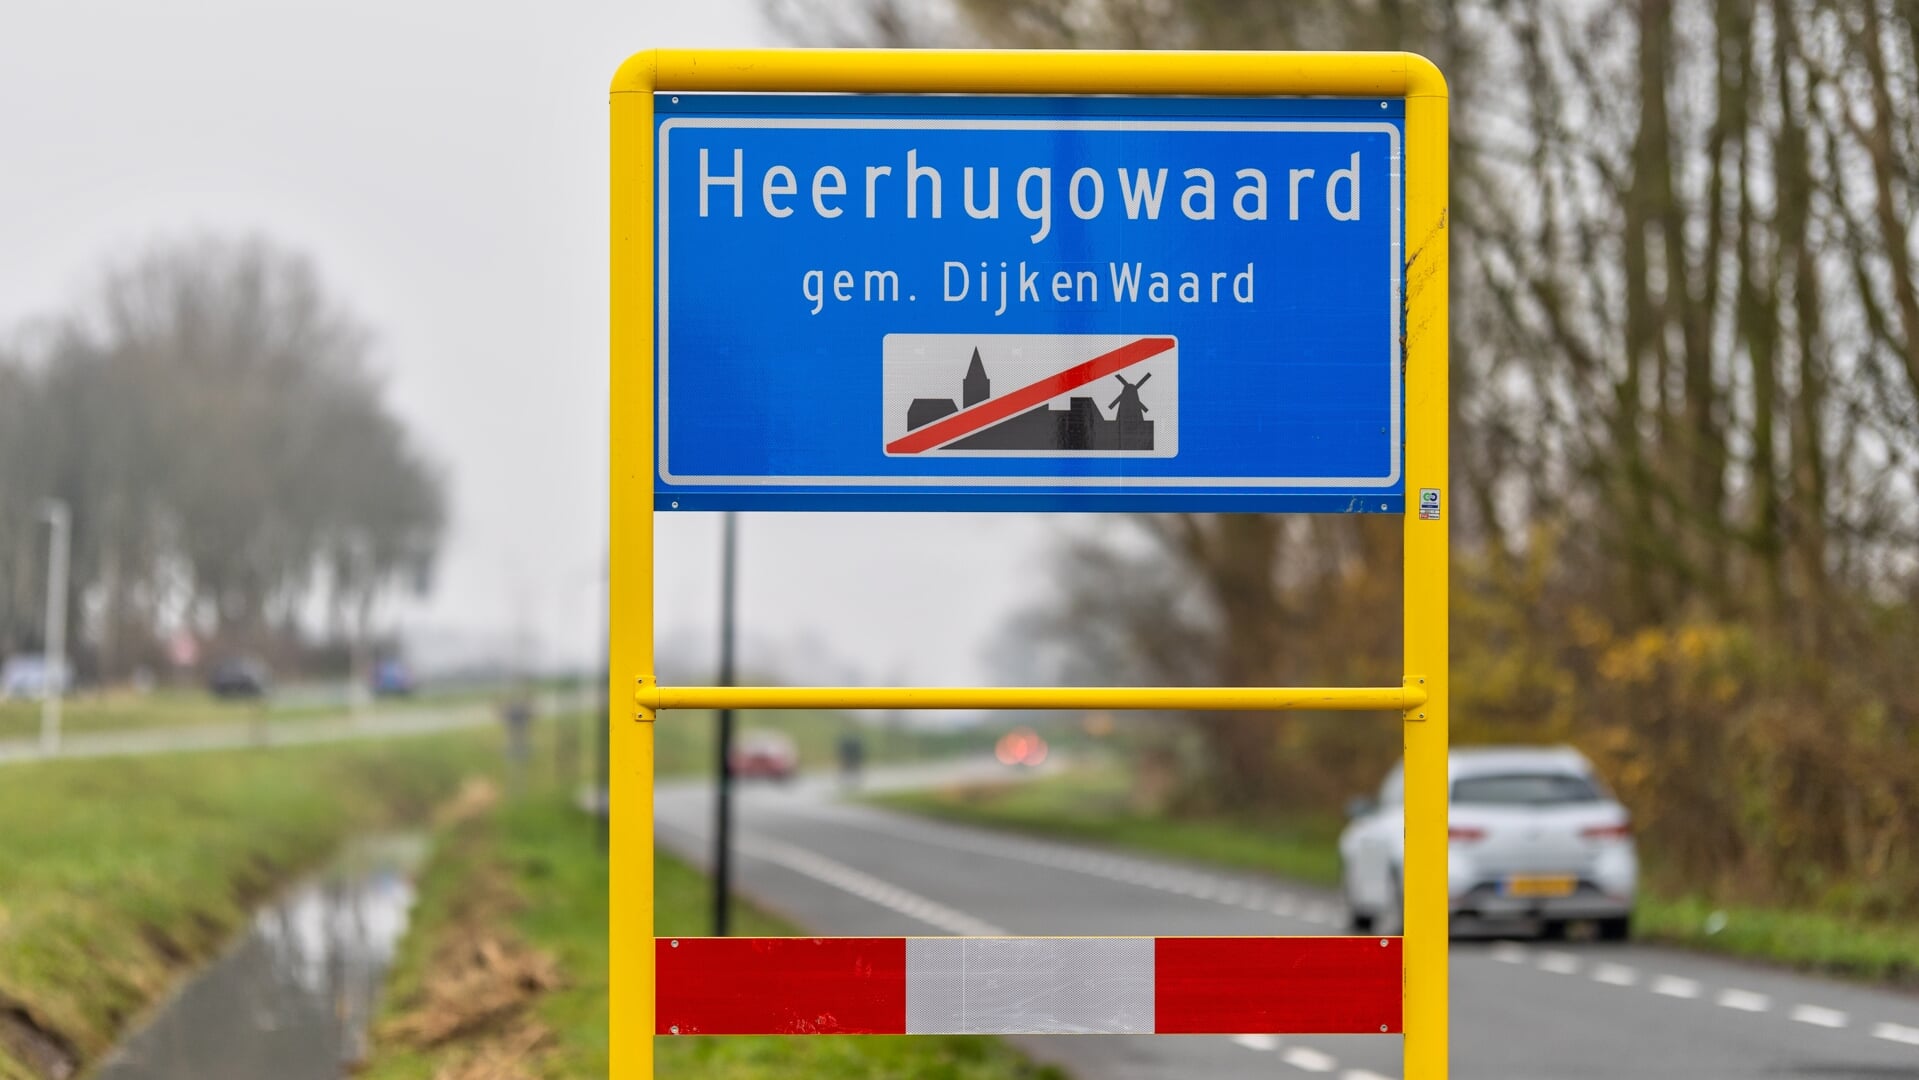 De raad praat onder meer over de bebouwde-komgrenzen in Dijk en Waard.